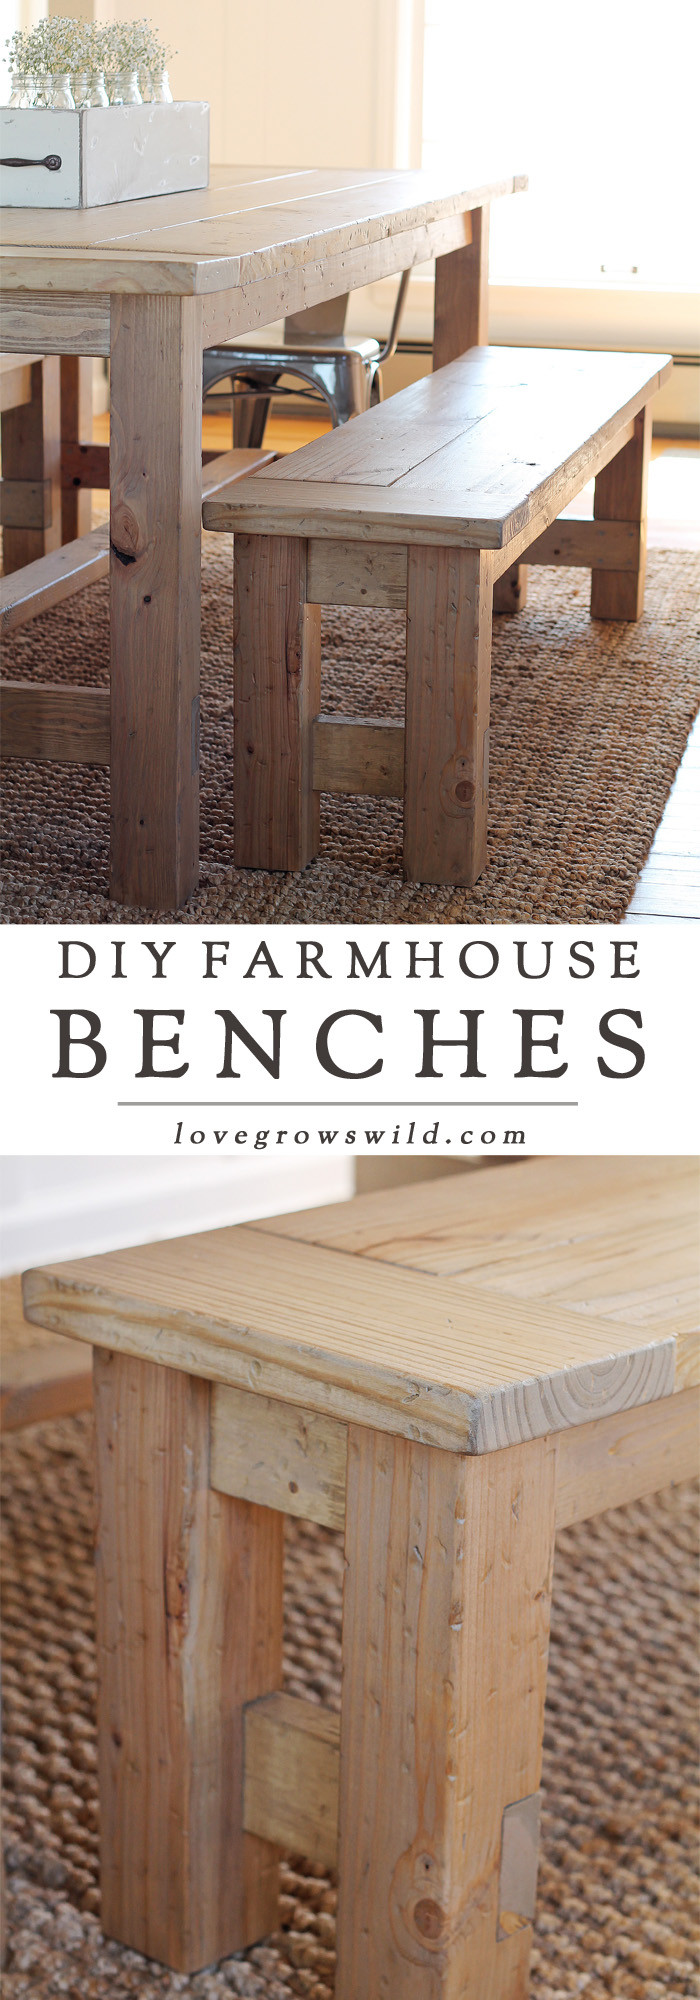 DIY Farmhouse Bench Plans
 DIY Farmhouse Bench Love Grows Wild